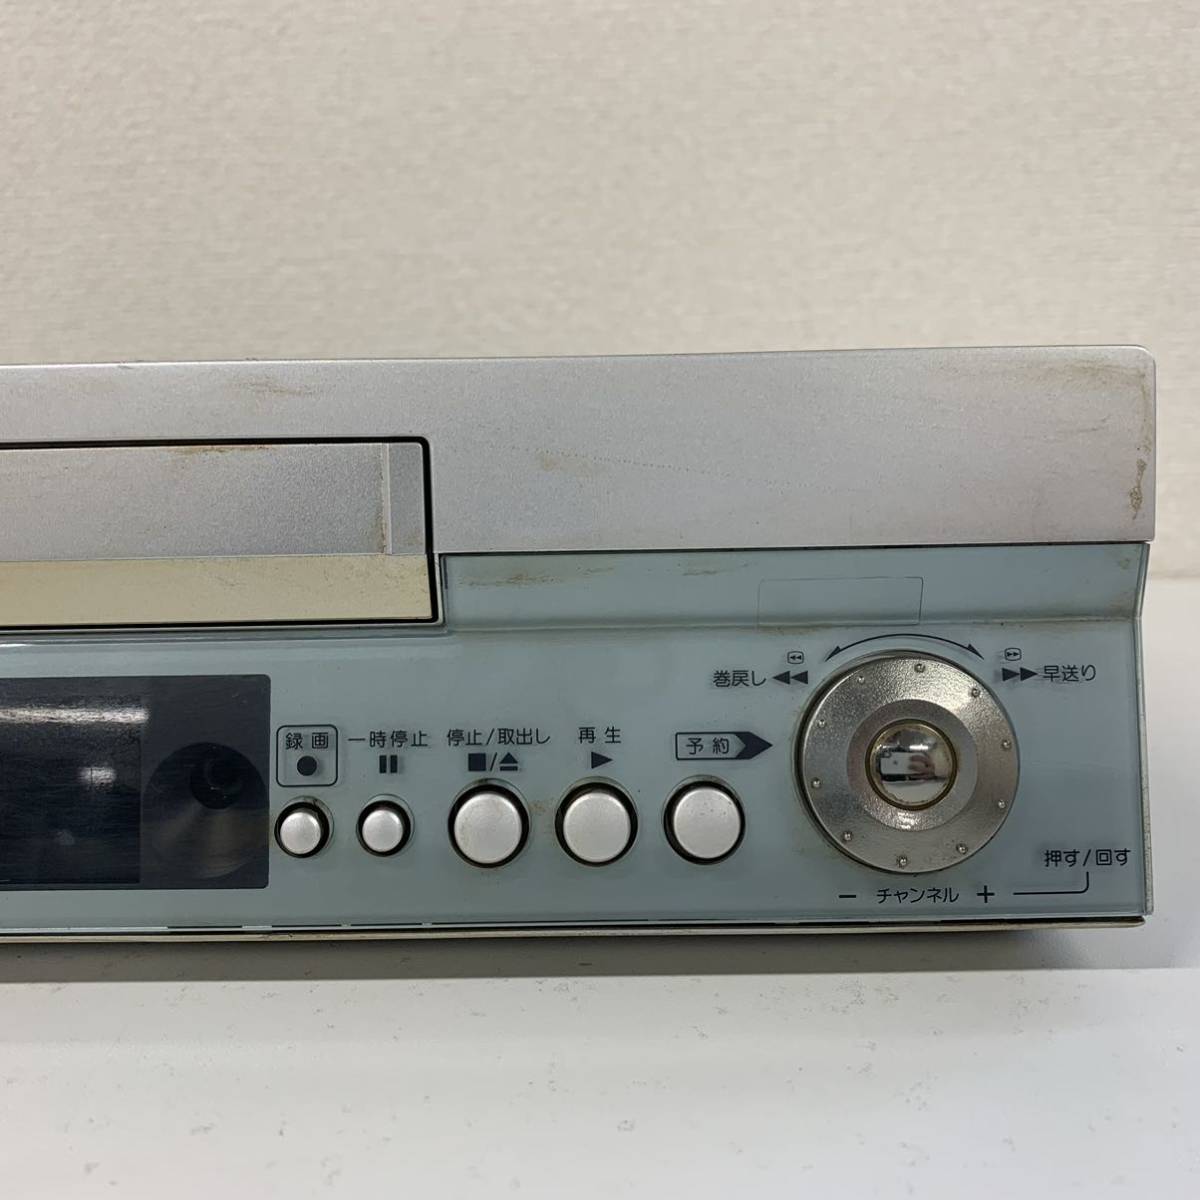 [Ga2] VICTOR HR-S500 видео кассета магнитофон электризация Victor VHS текущее состояние товар Ω291-9